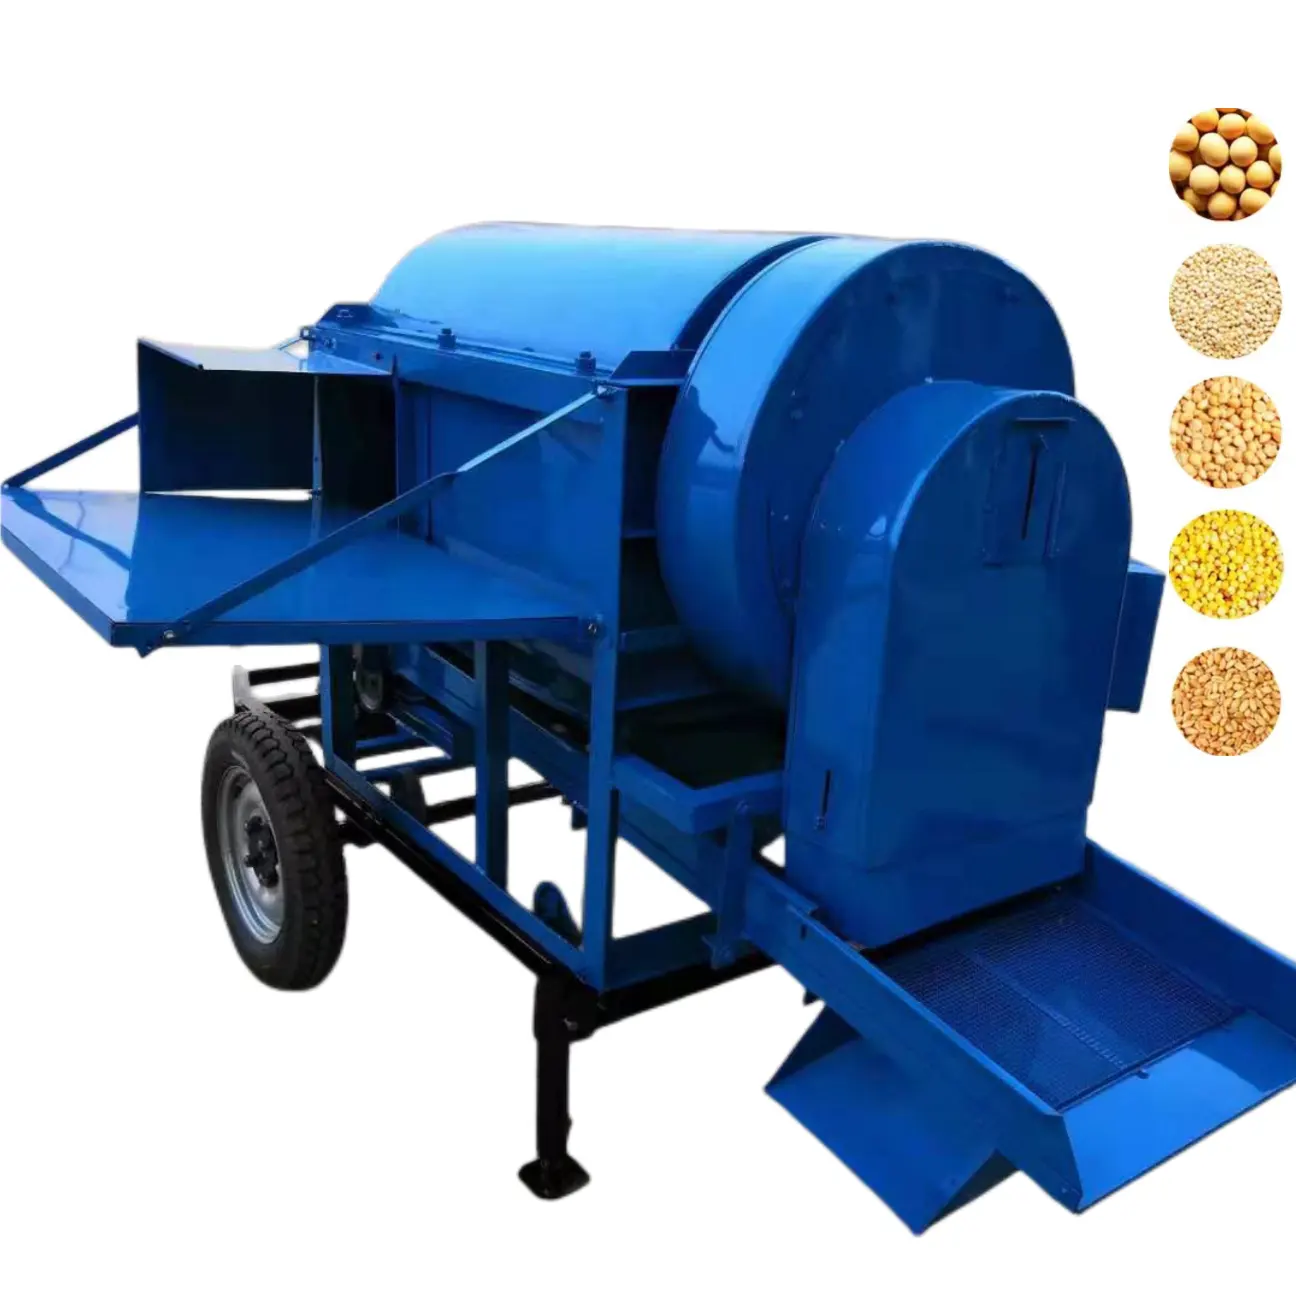 Büyük ekipman çok amaçlı harman tahıl harman satılık sağlanan mısır harman ve soyma makinesi dizel motor 300